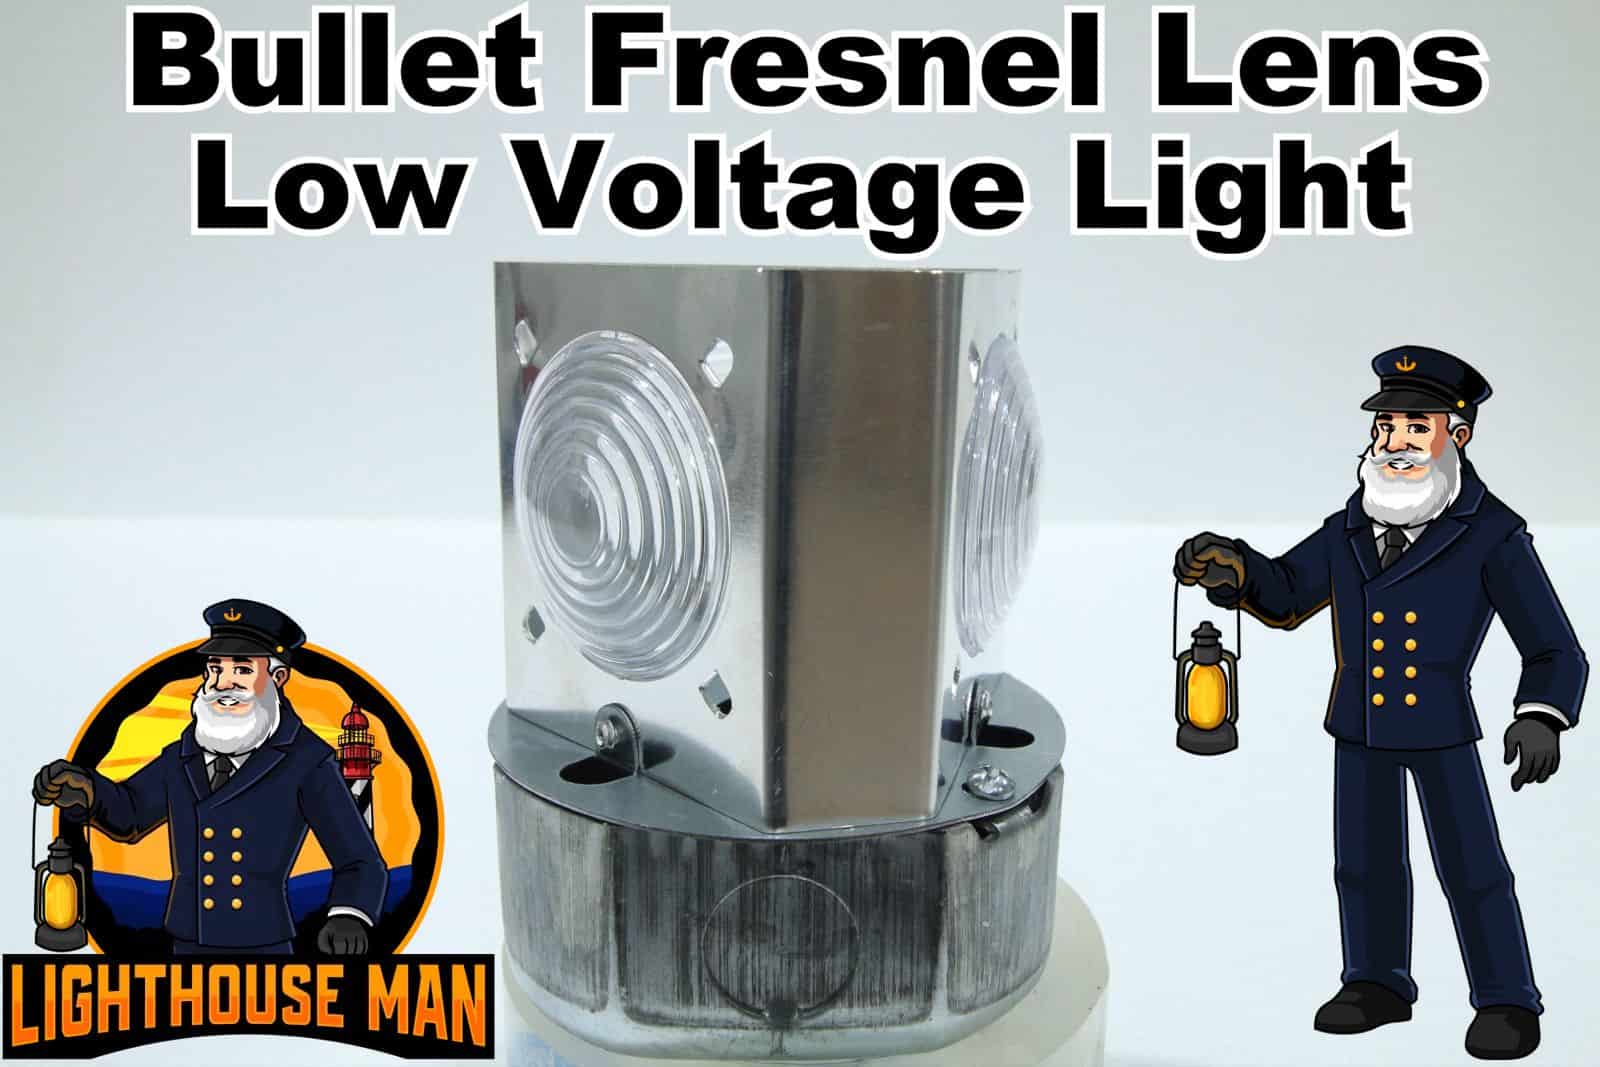 Bullet Fresnel Lens Low Voltage